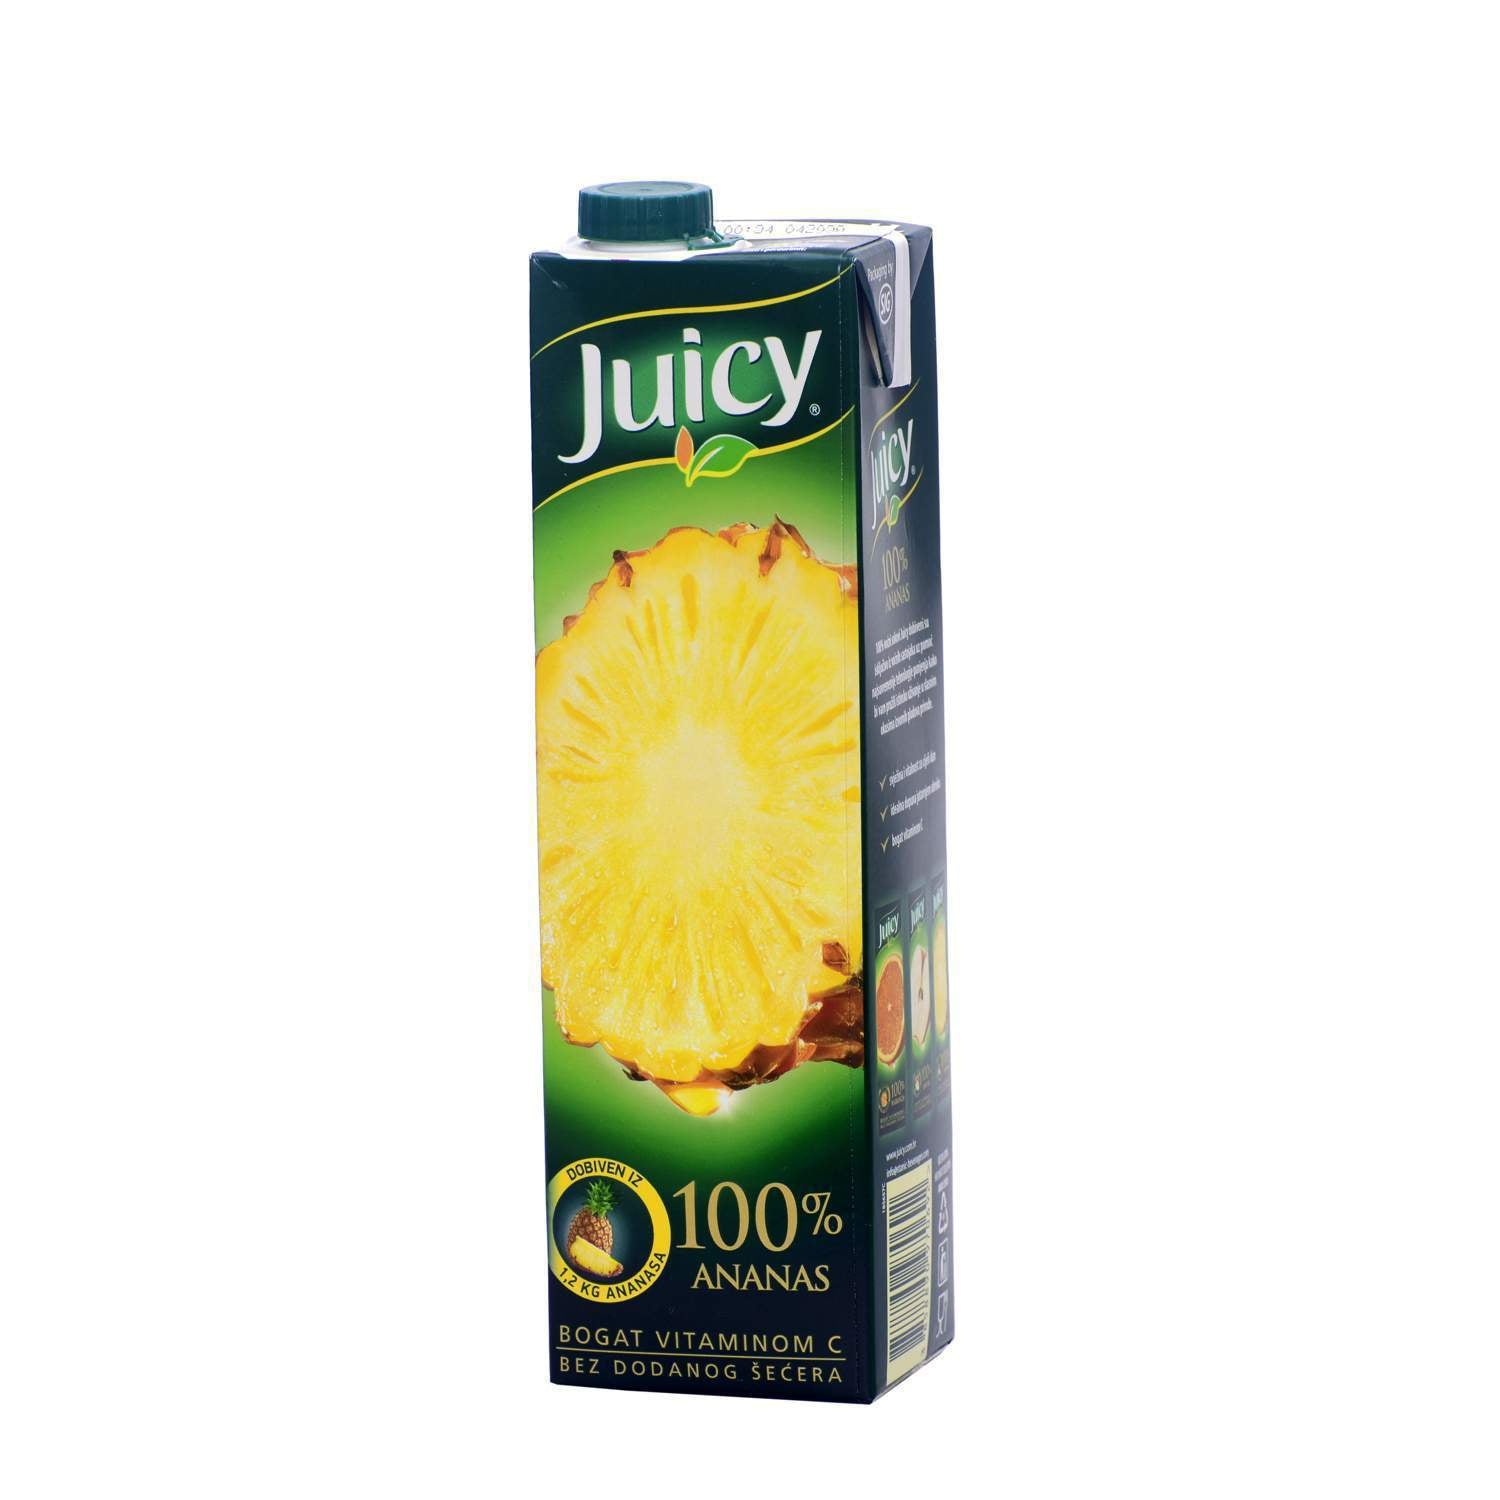 aga>Juicy Pineapple Juice 1l